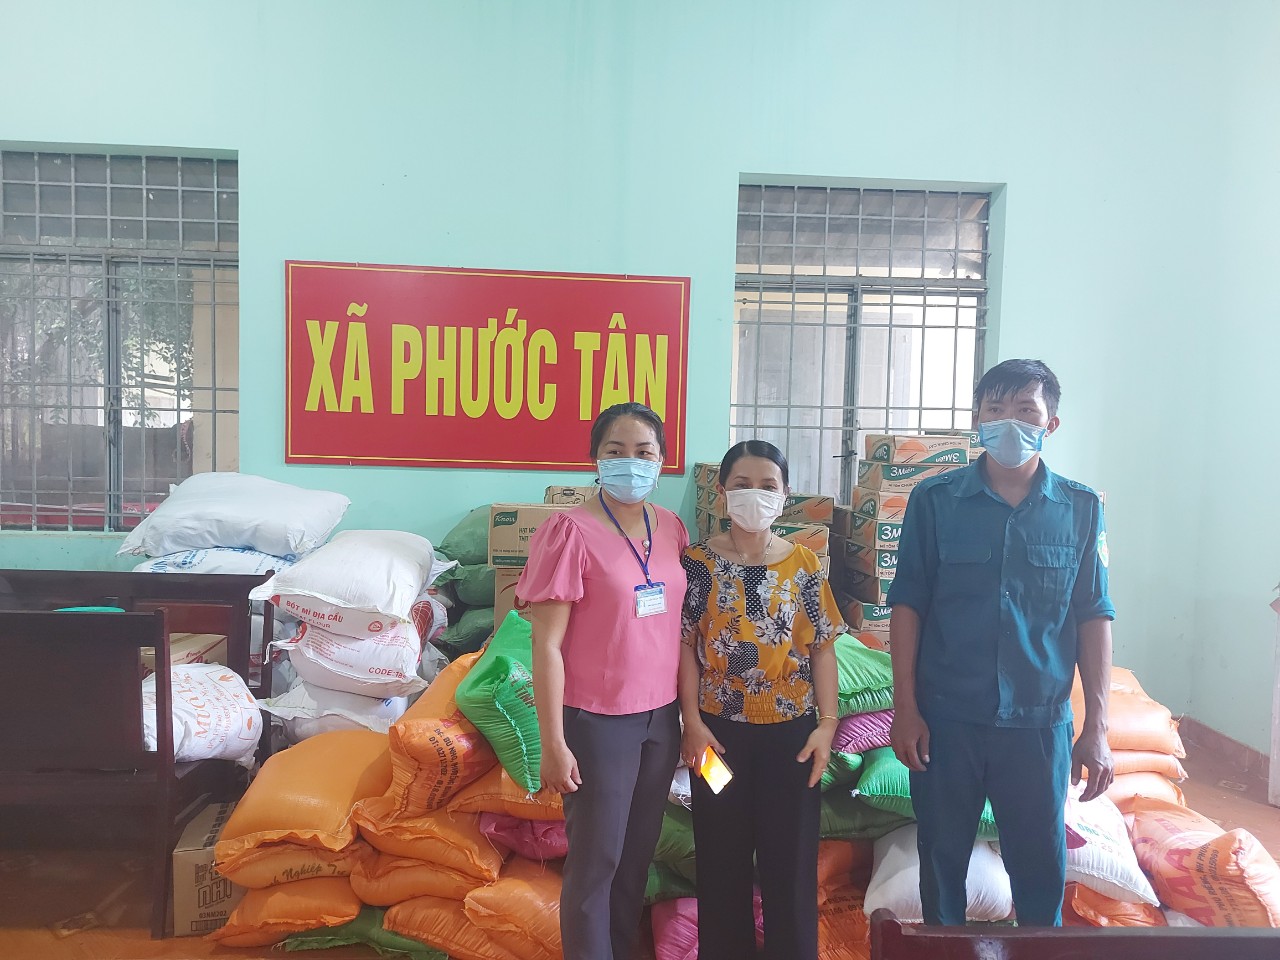 Ủy ban MTTQ Việt Nam huyện trao tặng 100 phần quà cho các hộ dân gặp khó khăn của thôn Bù Tố, xã Phước Tân